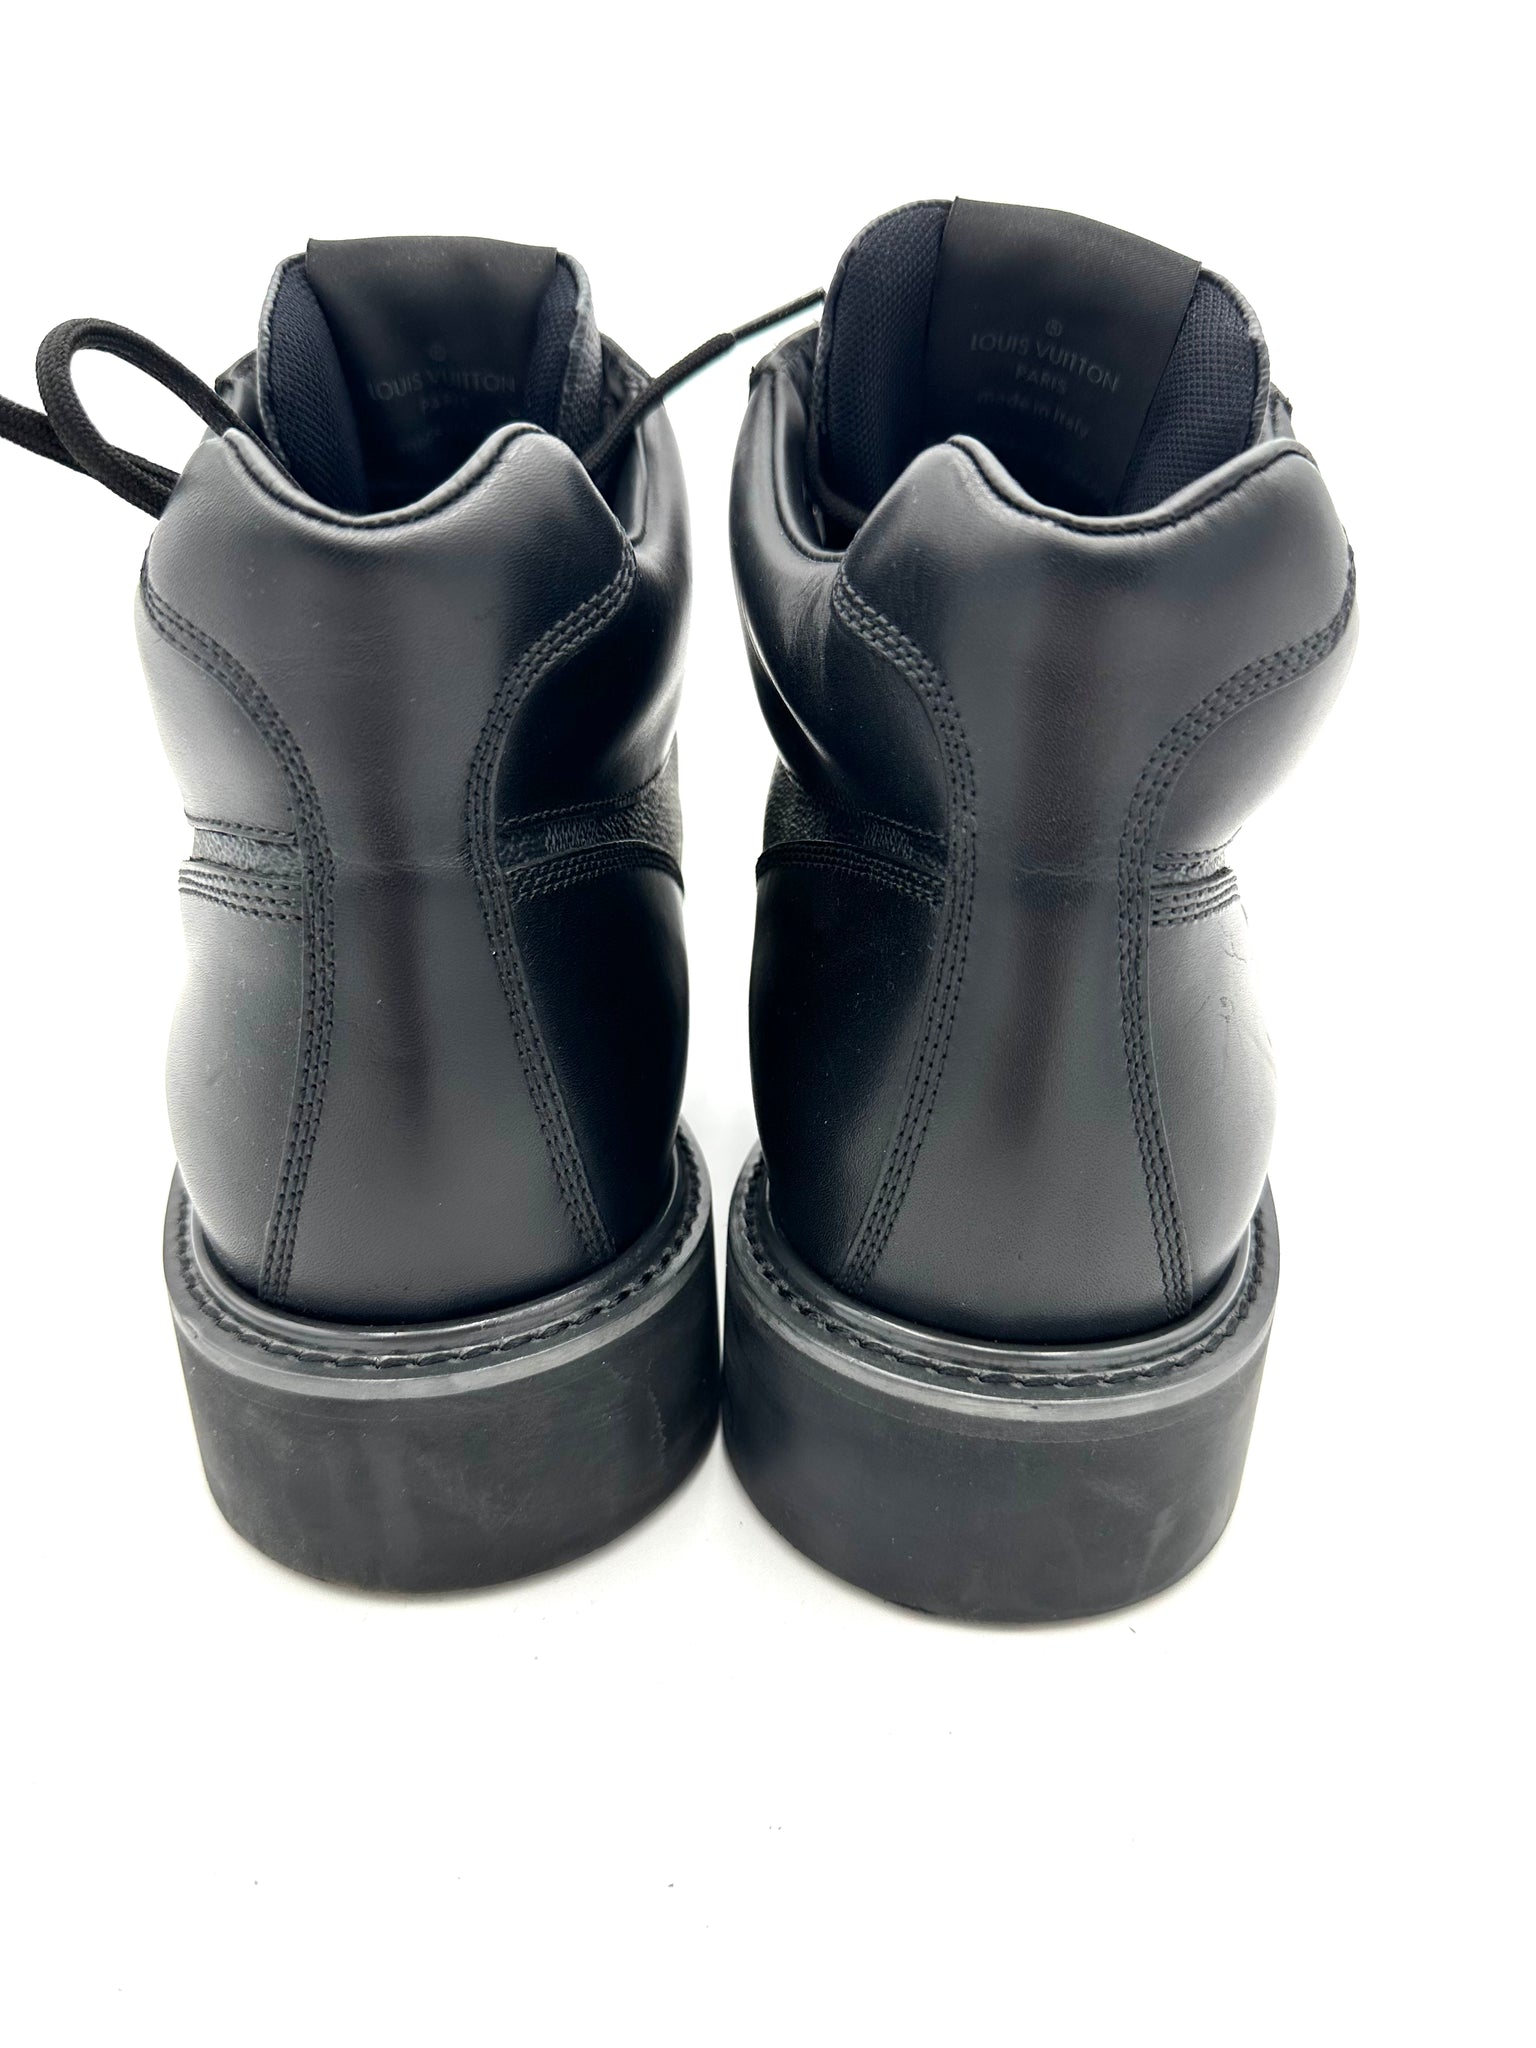 Louis Vuitton Work Boots for Women